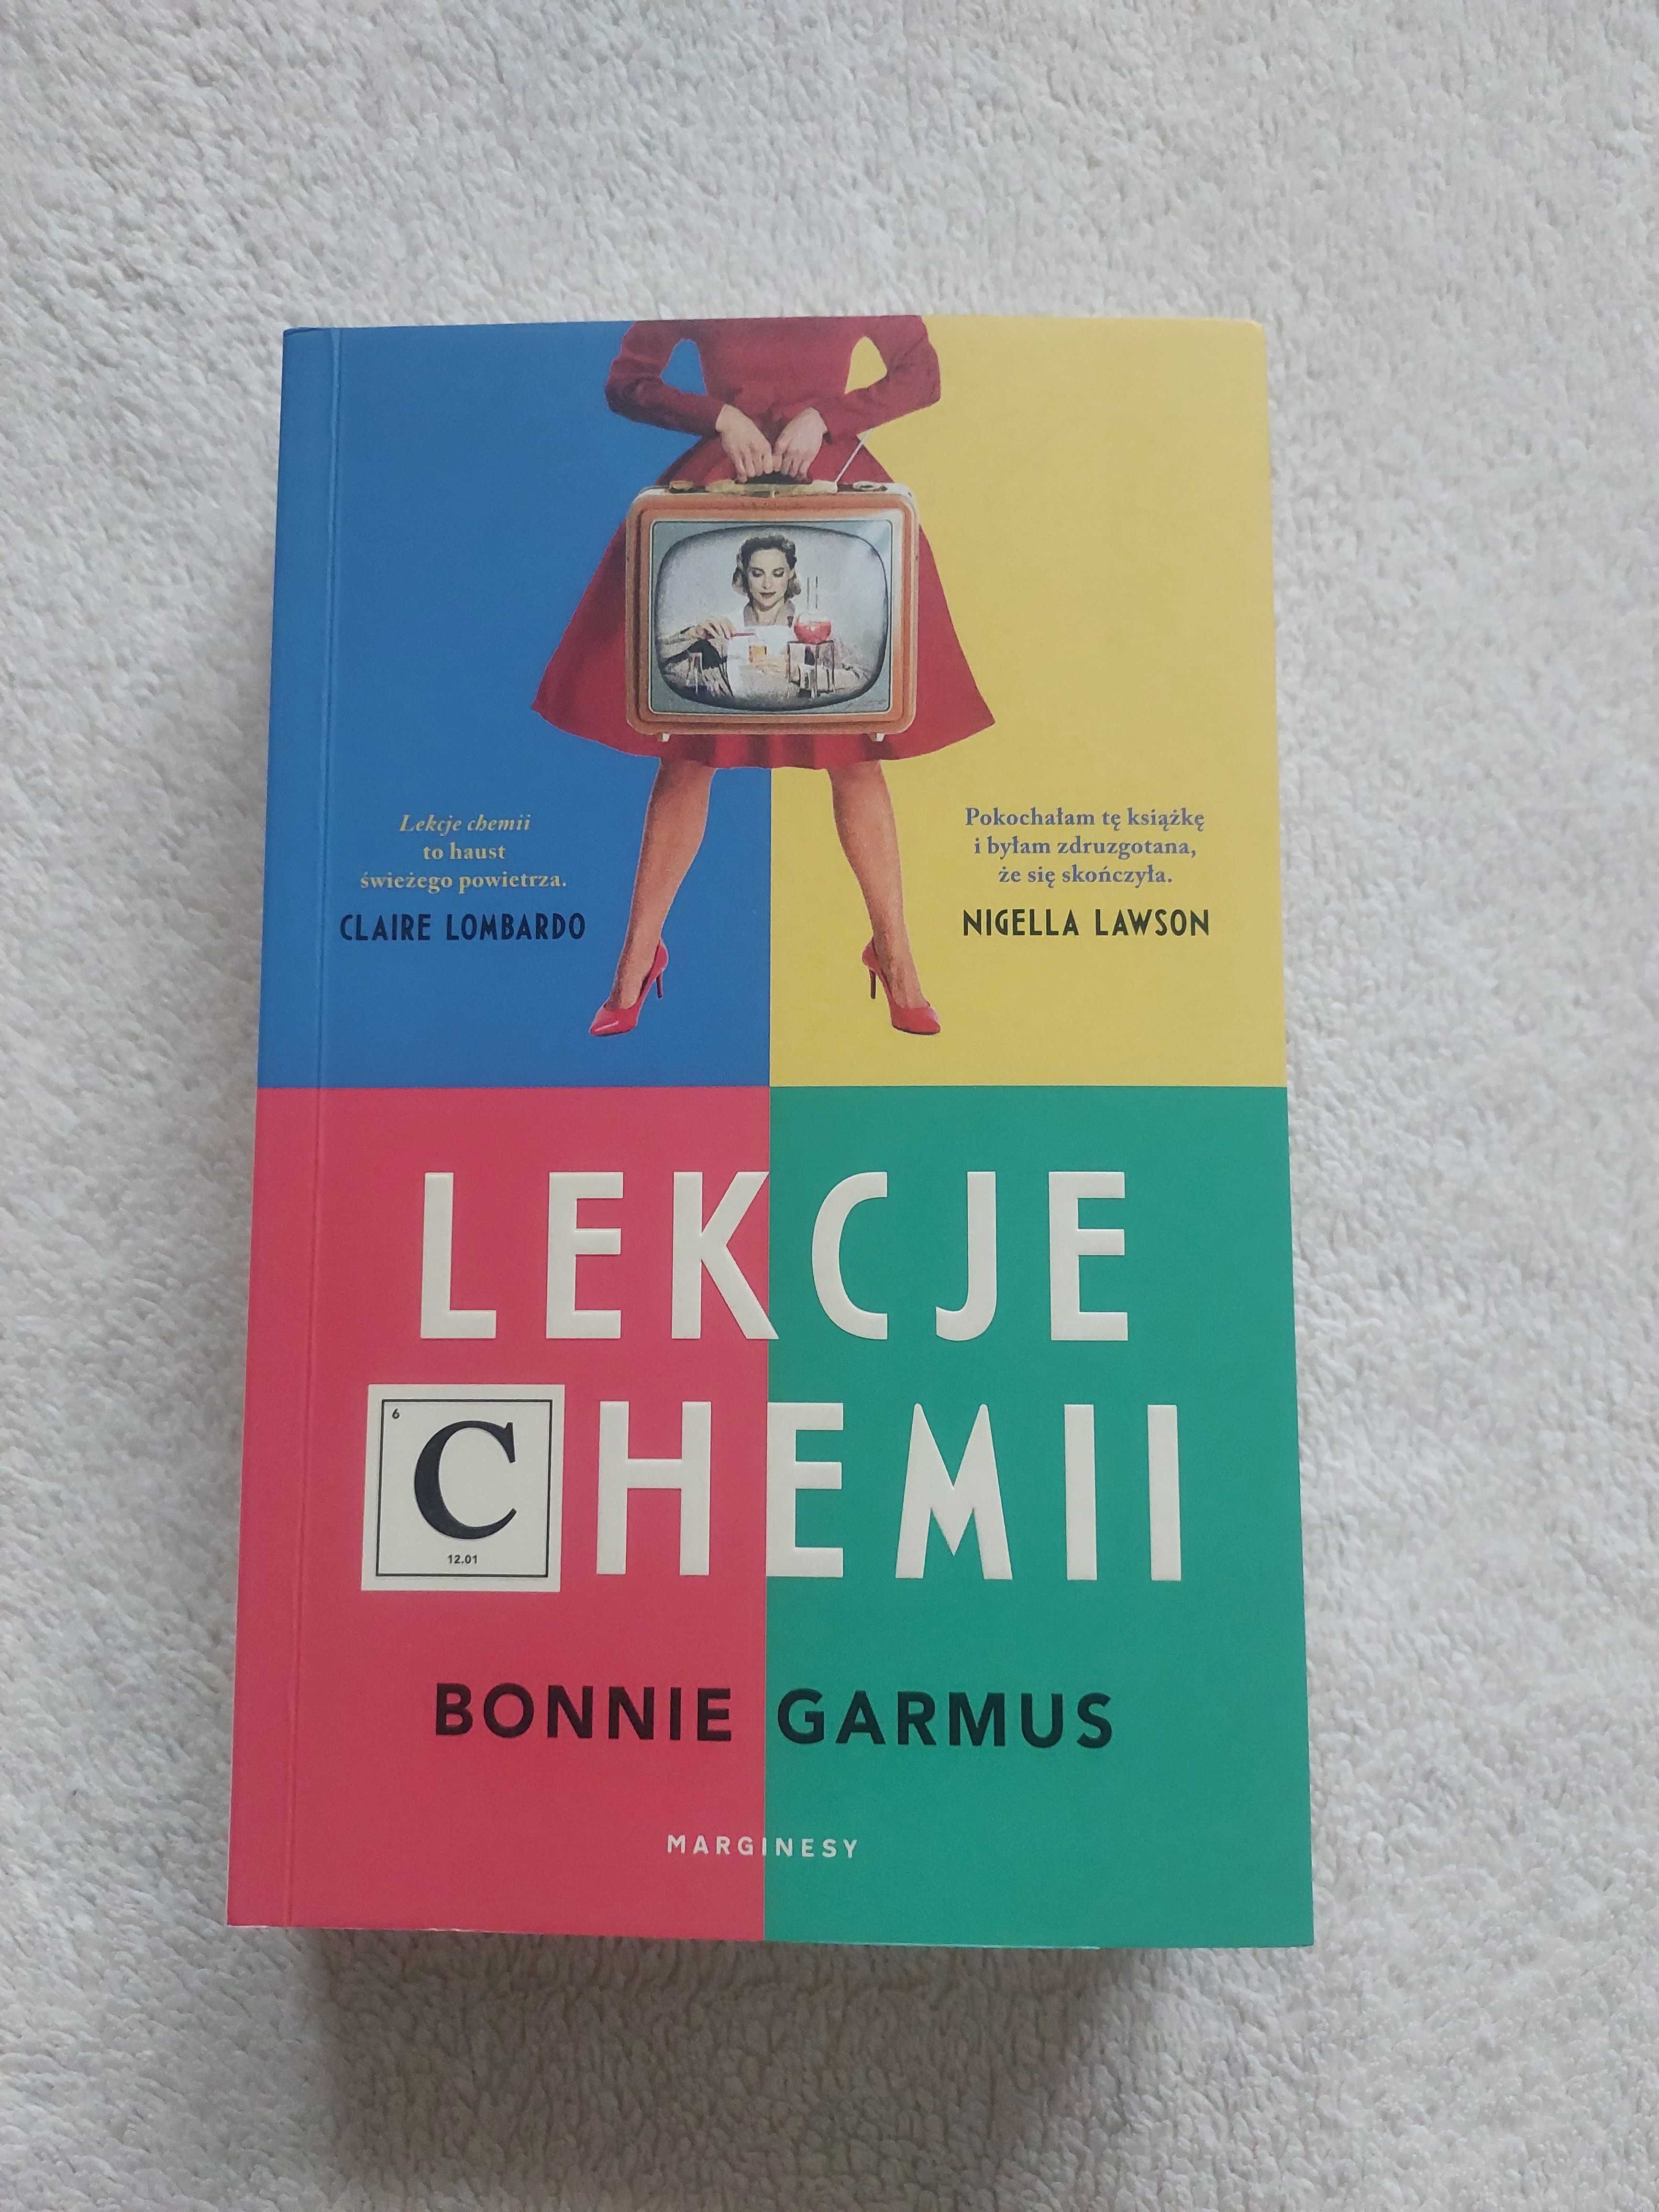 Lekcje chemii - Bonnie Garmus książka, miękka okładka